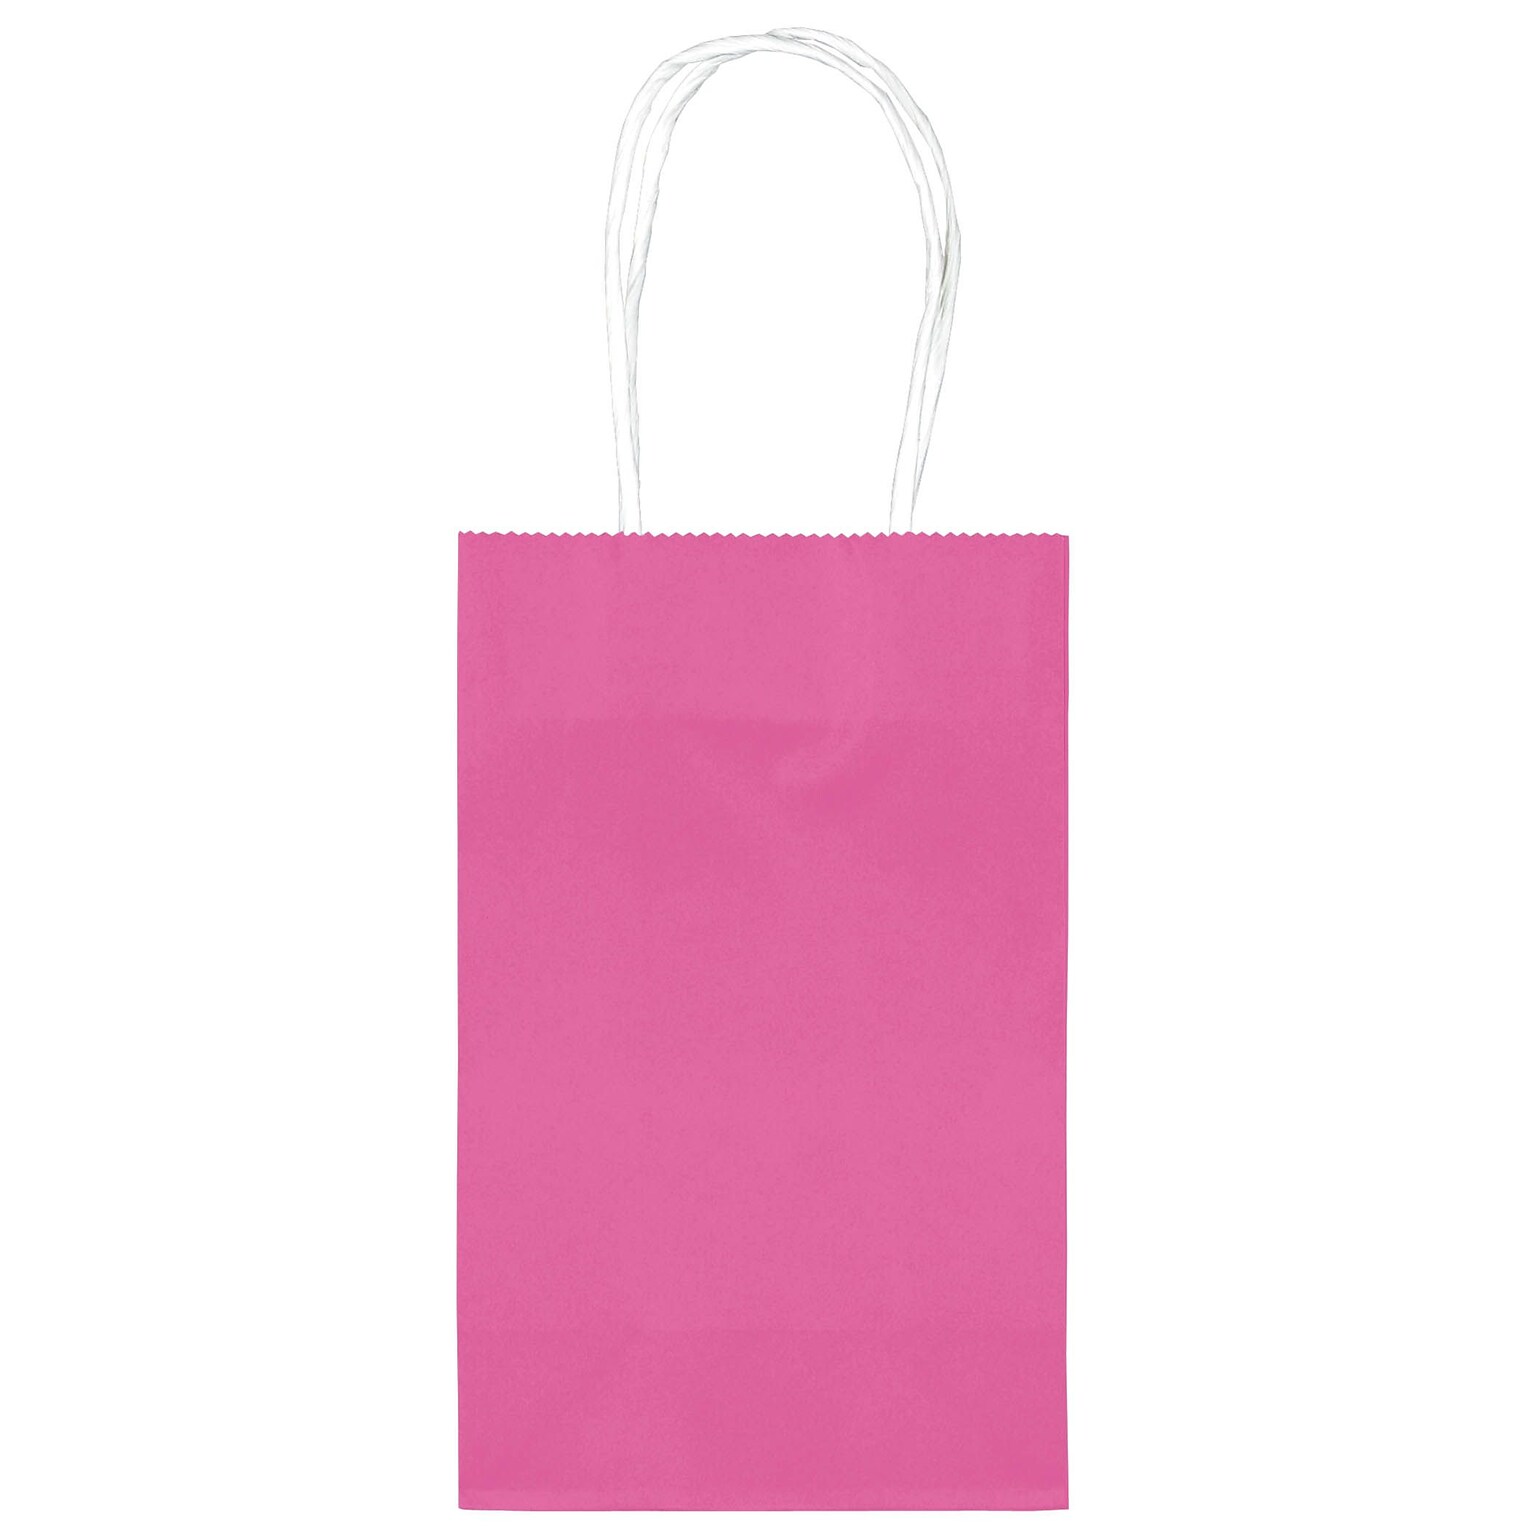 Amscan Kraft Paper Bag, 8.25 x 5.25, Bright Pink, 4/Pack, 10 Bags/Pack (162500.103)